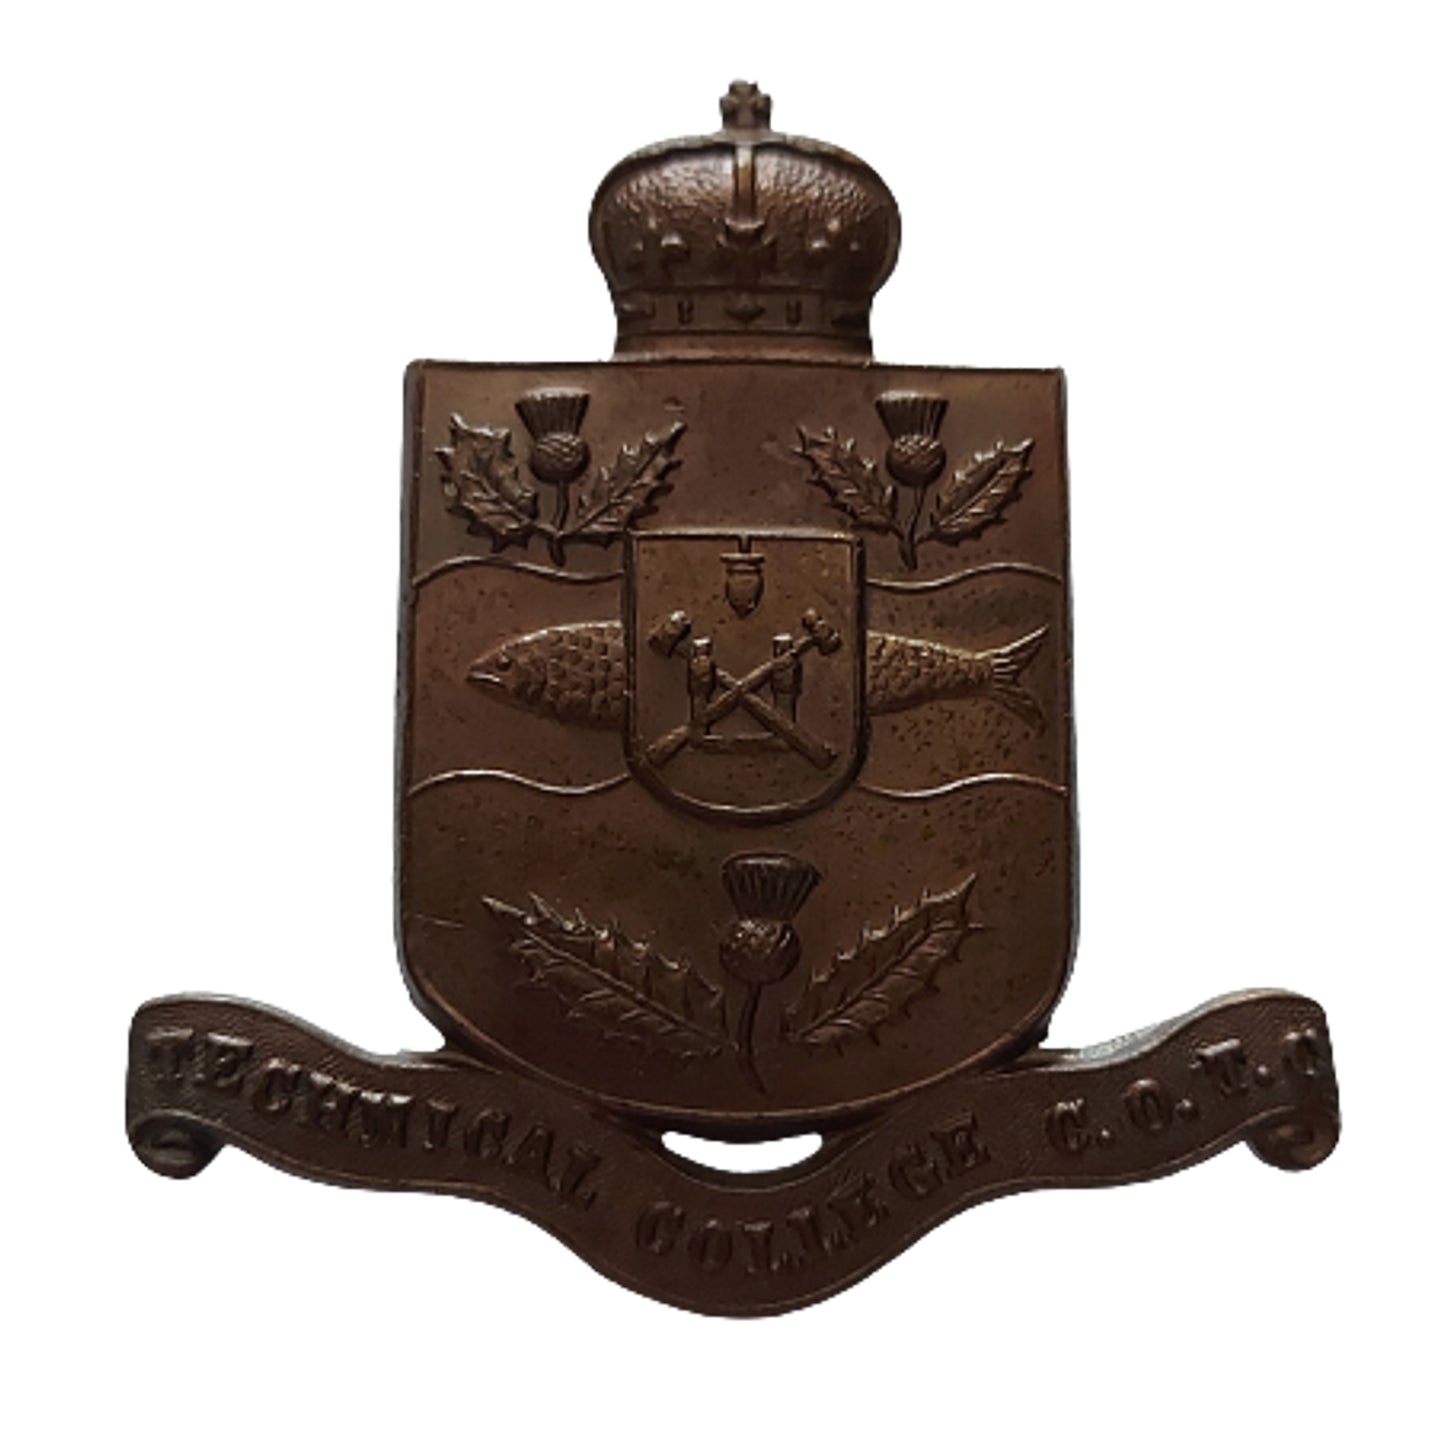 COTC Nova Scotia Technical College Cap Badge